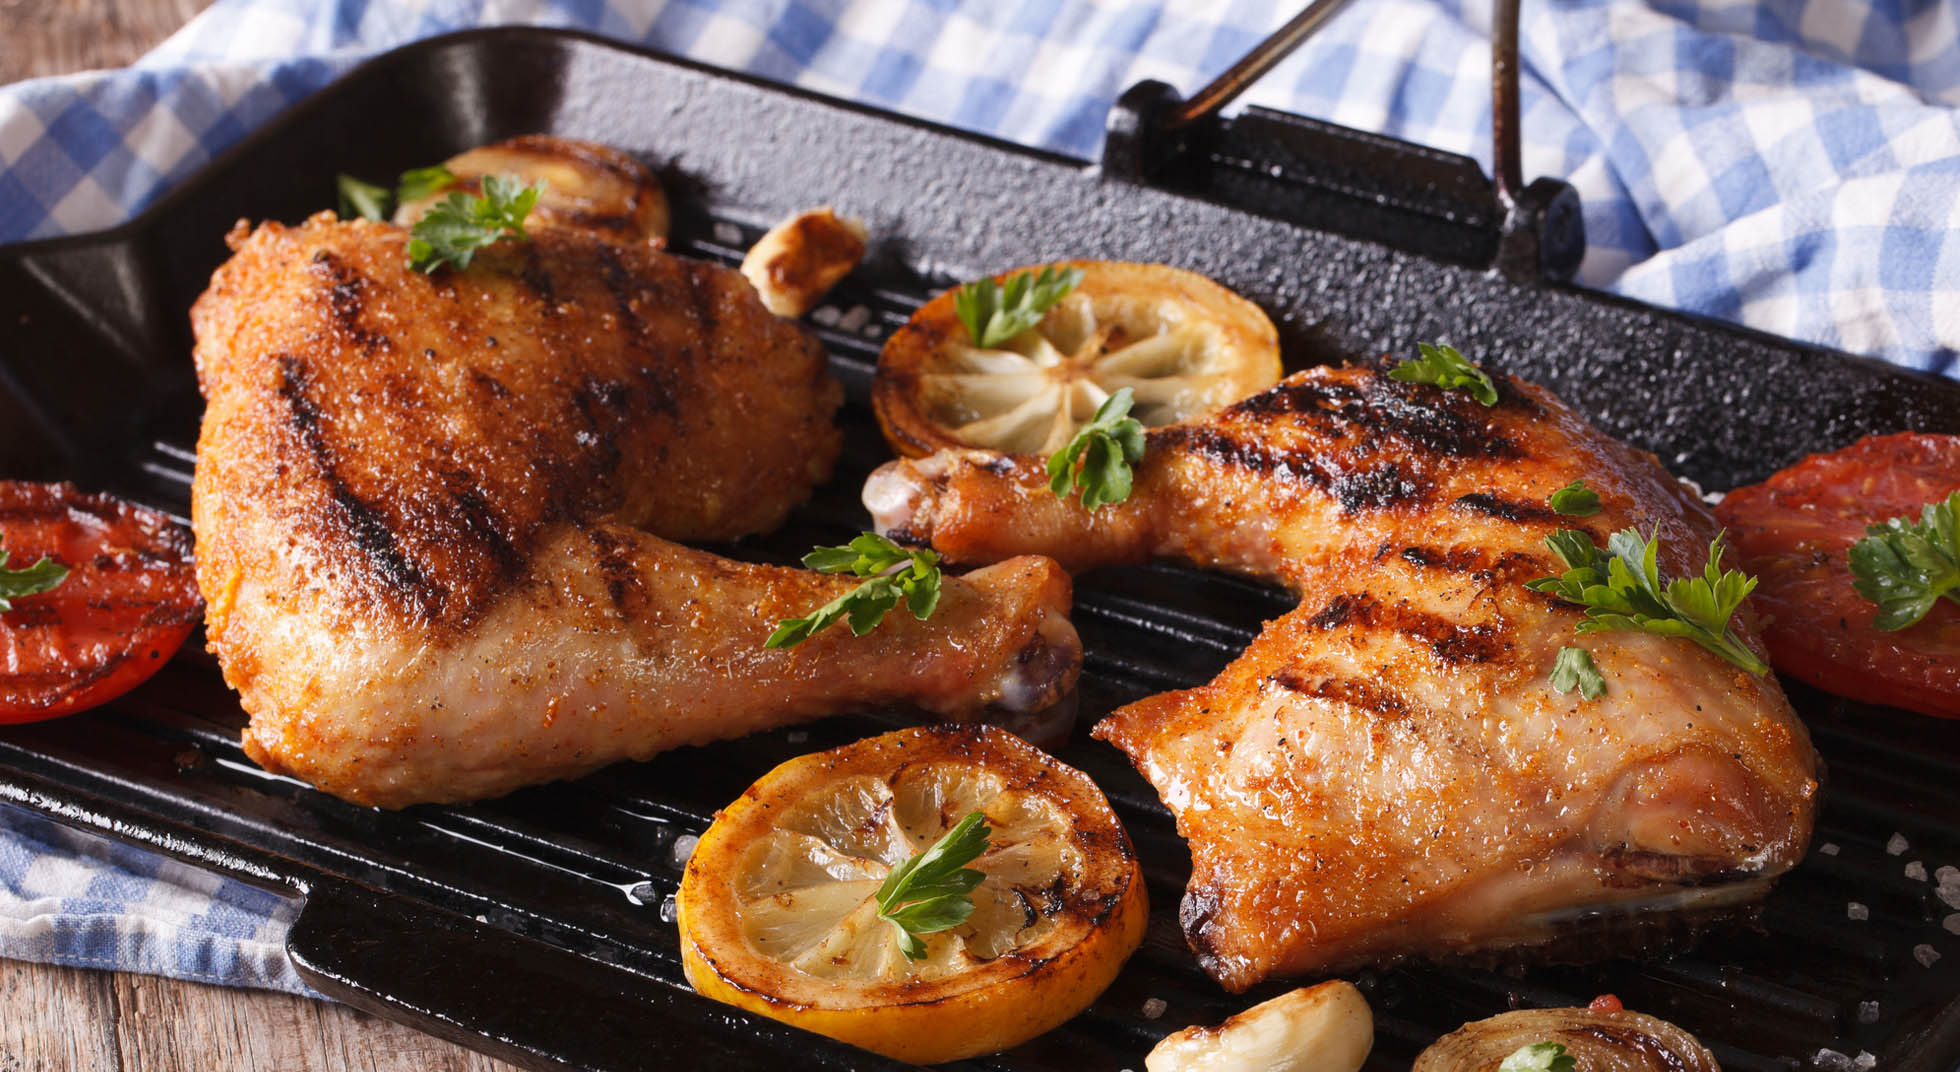 Pollo alla griglia: 10 contorni sfiziosi da abbinare | AIA Food